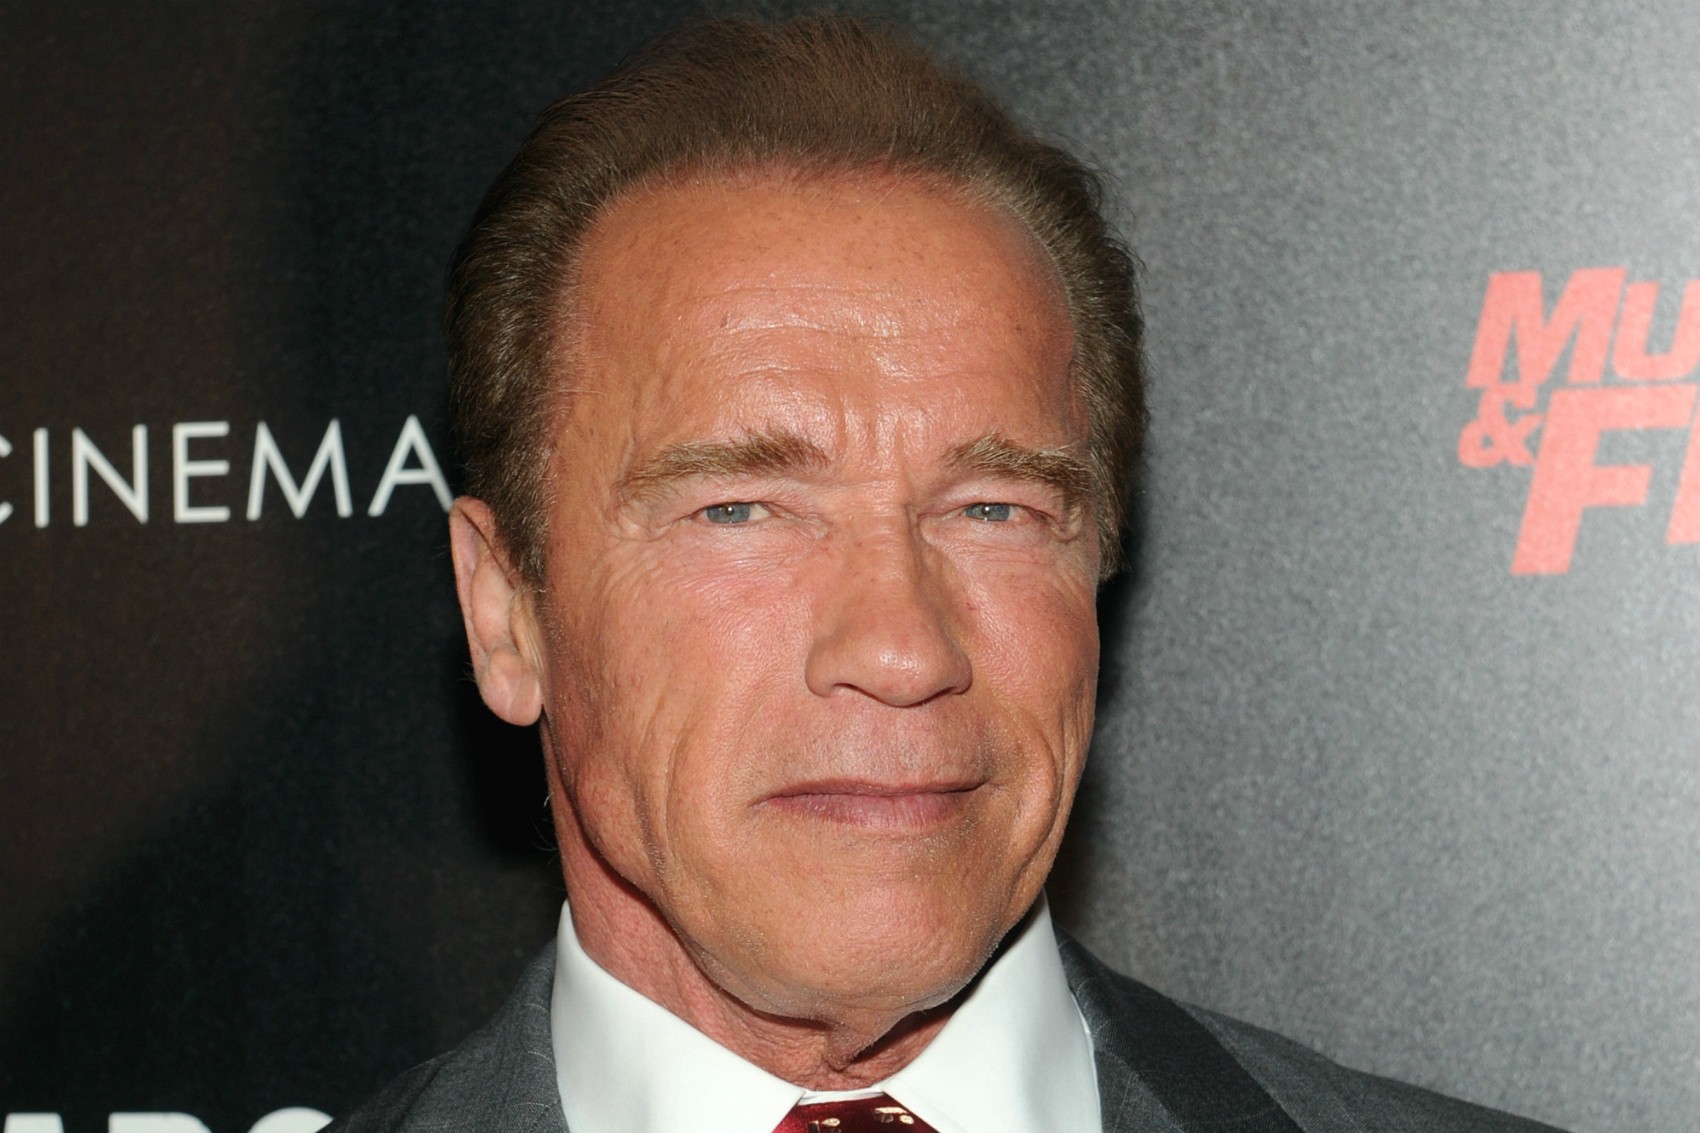 Arnold Schwarzenegger traiu a esposa com uma empregada da casa da família durante mais de uma década. E a mulher em questão, Mildred Patricia Baena, teve um filho com o ator em 1997, porém isso só veio à tona em 2011. (Foto: Getty Images)